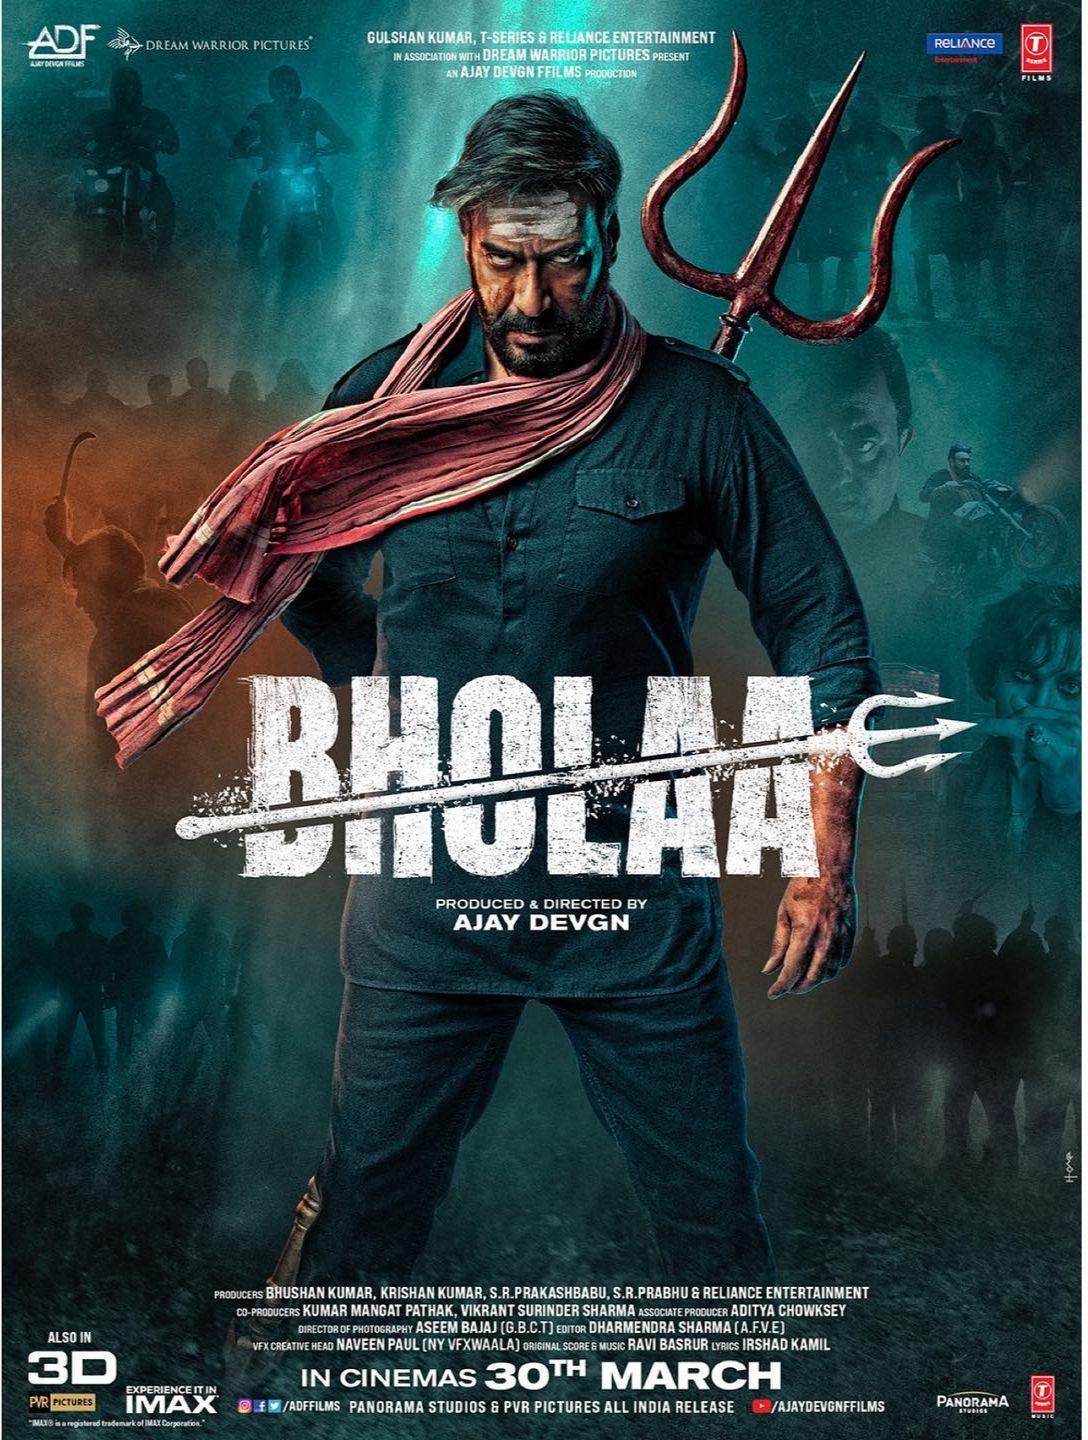 Bholaa online film